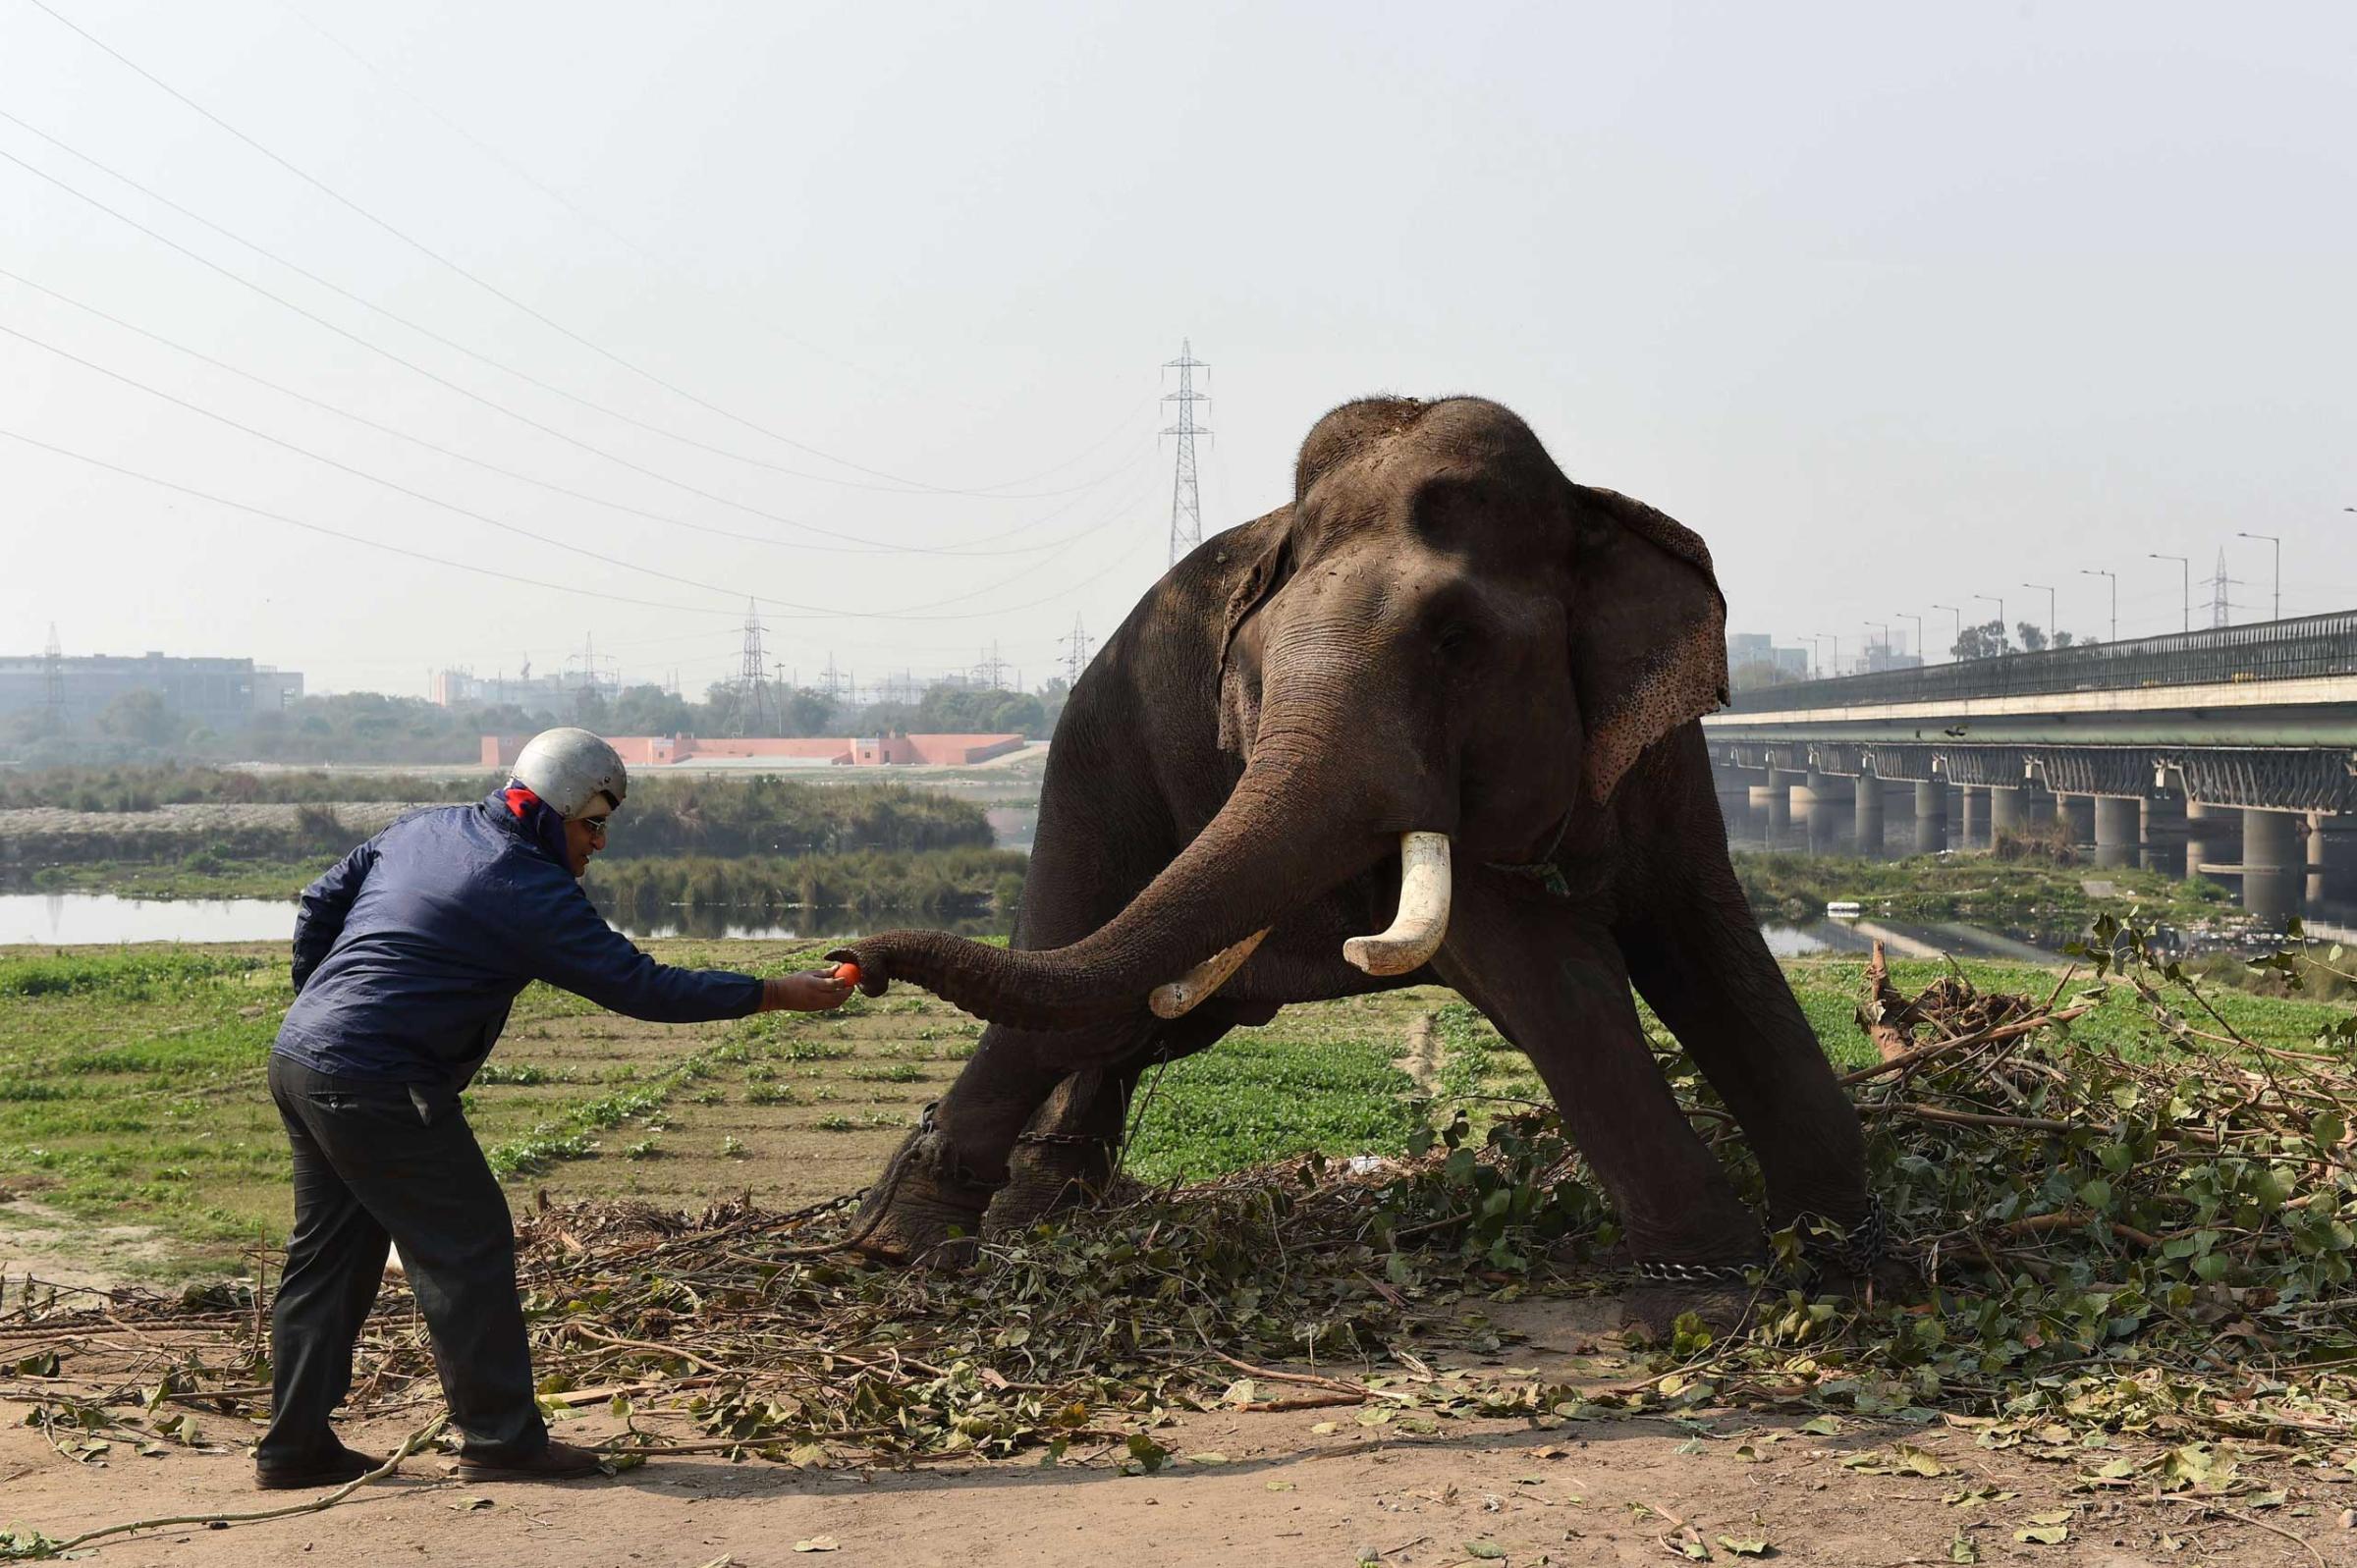 TOPSHOTS-INDIA-ANIMAL-ELEPHANT